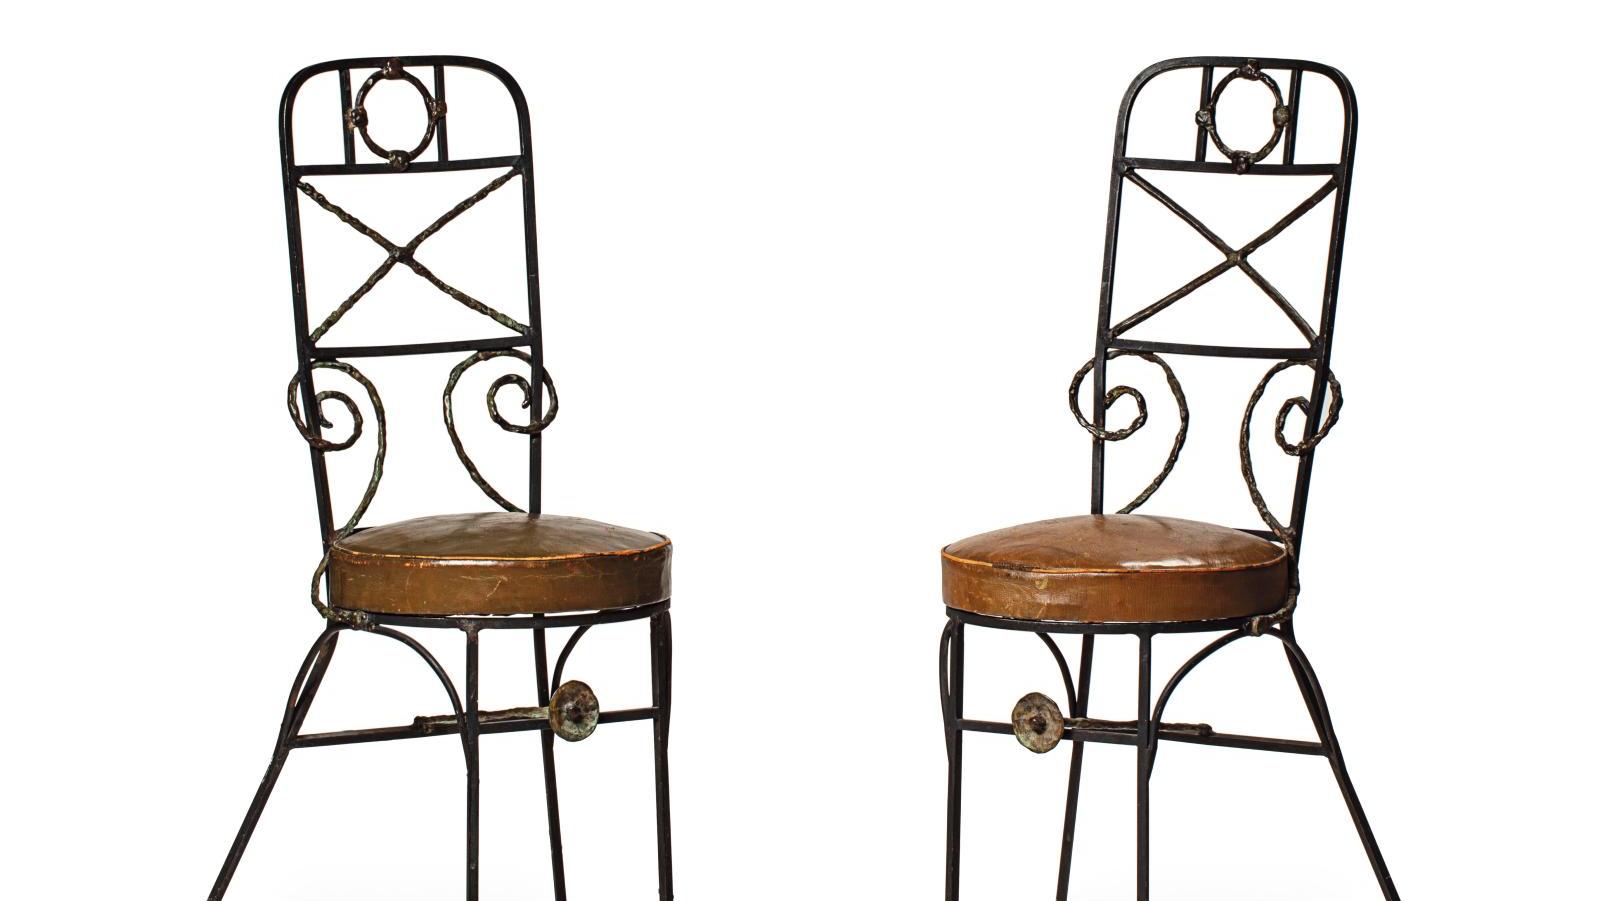 Diego Giacometti (1902-1985), paire de chaises, modèle Maeght en fer noir et bronze... Une indéfectible amitié